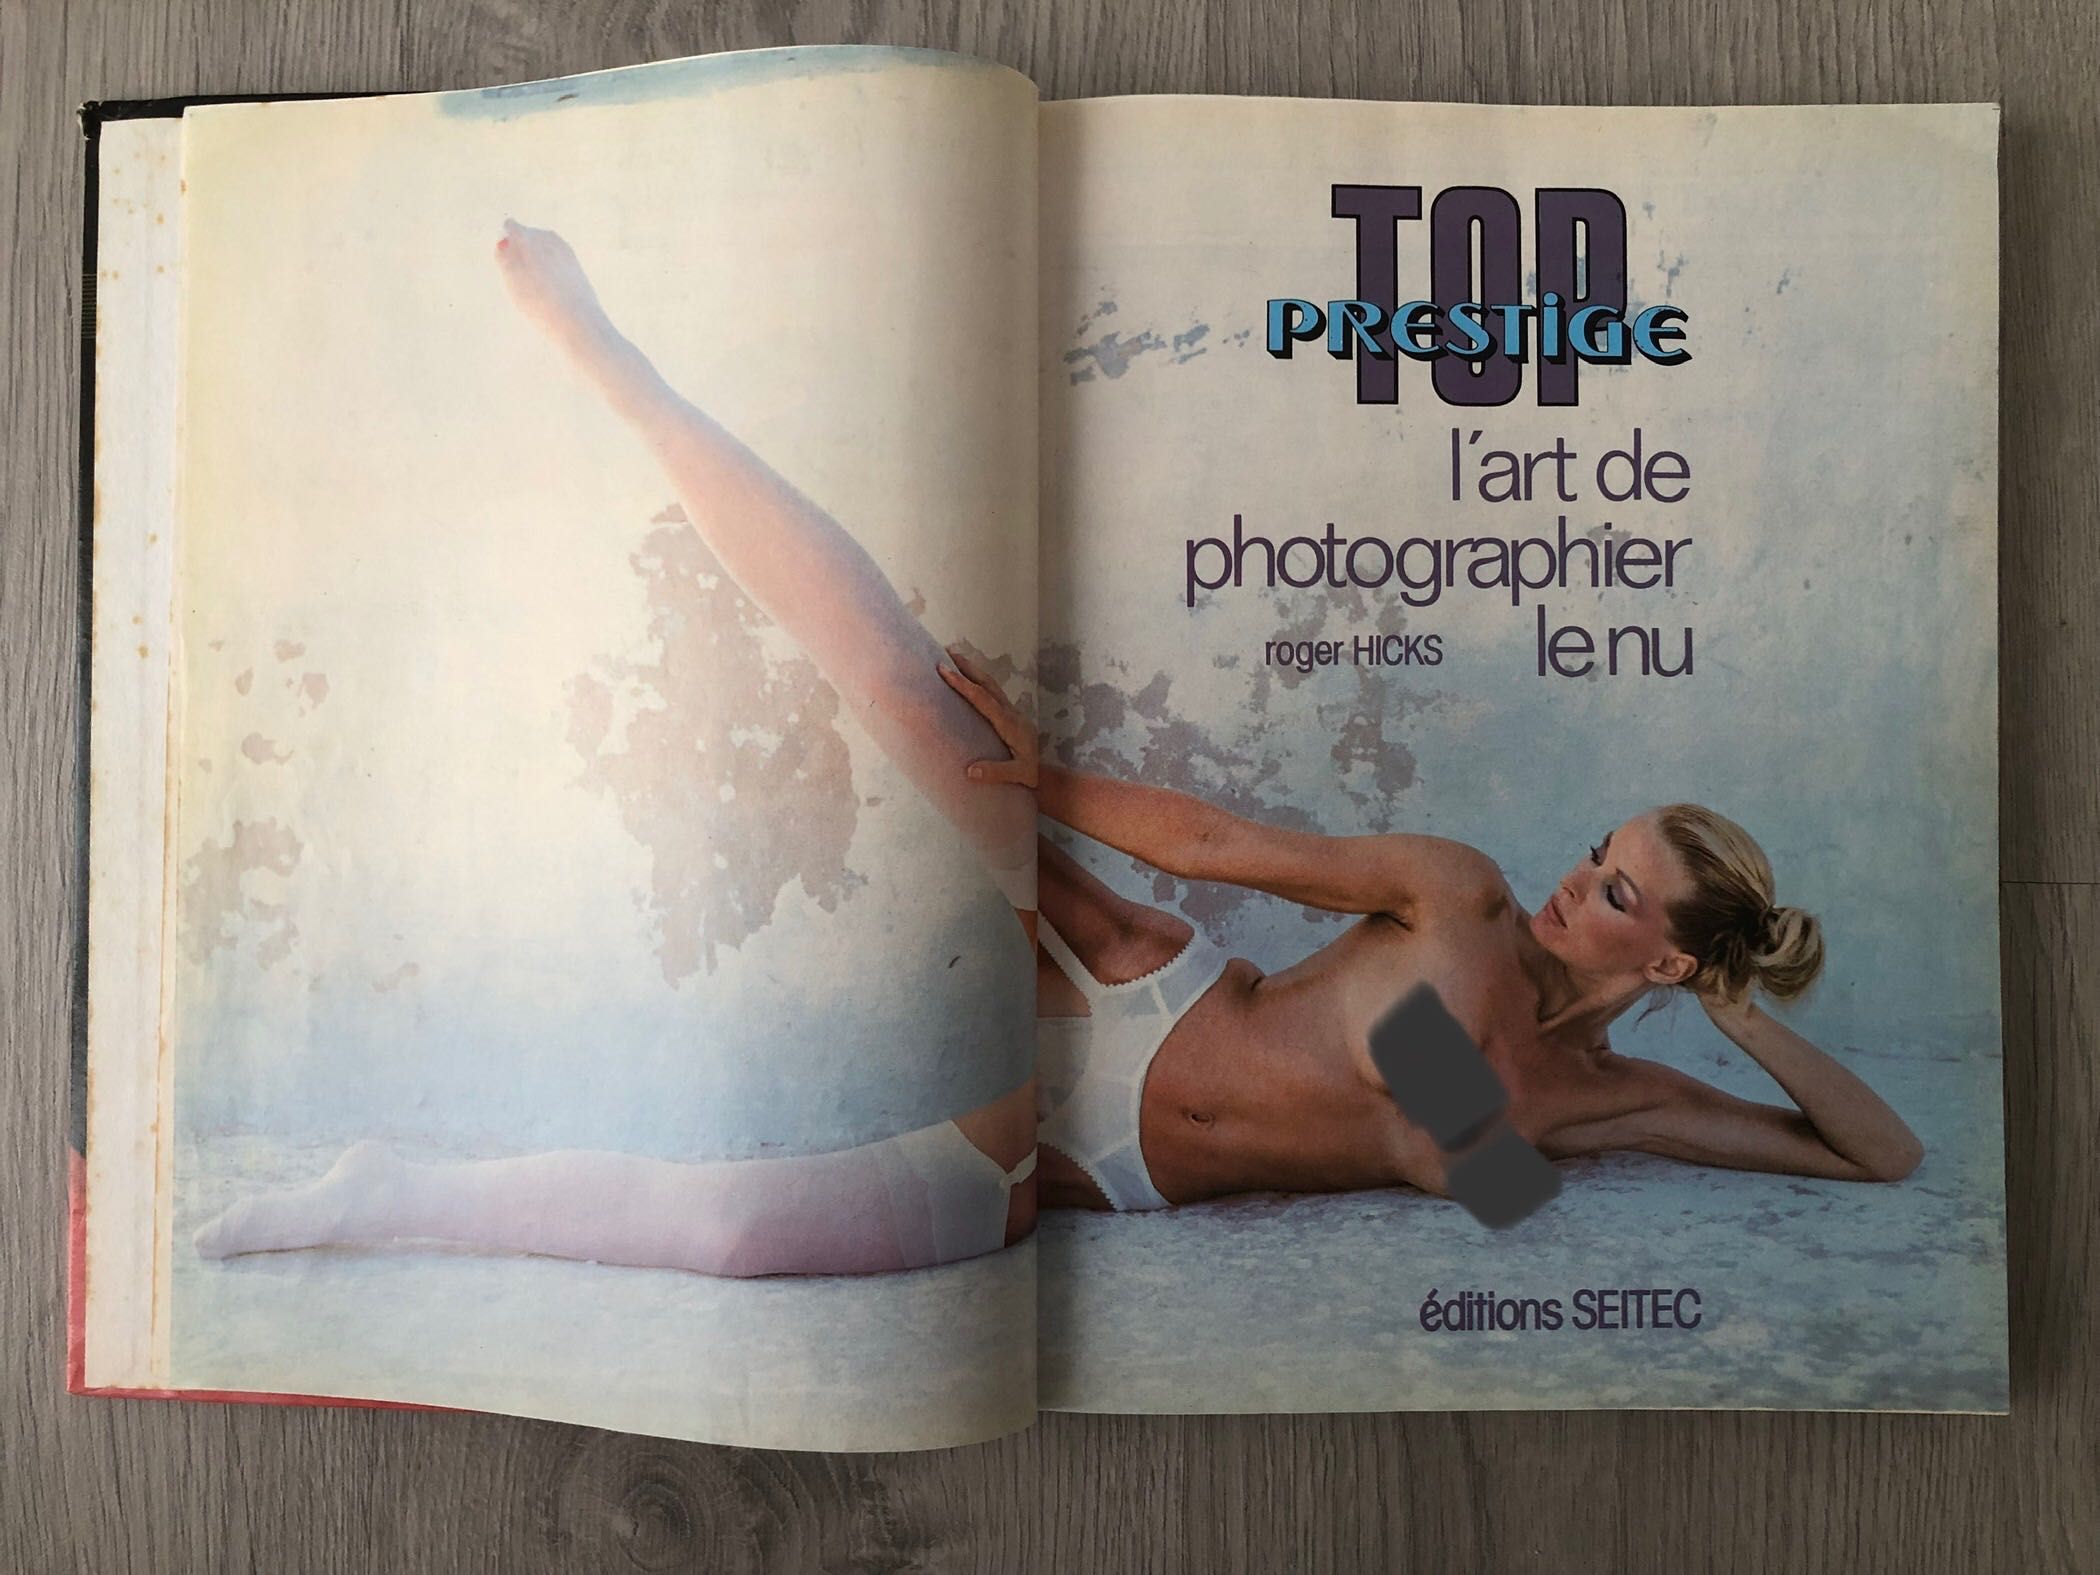 Livro de fotografia técnica glamour nu artístico. Francês ano 1982